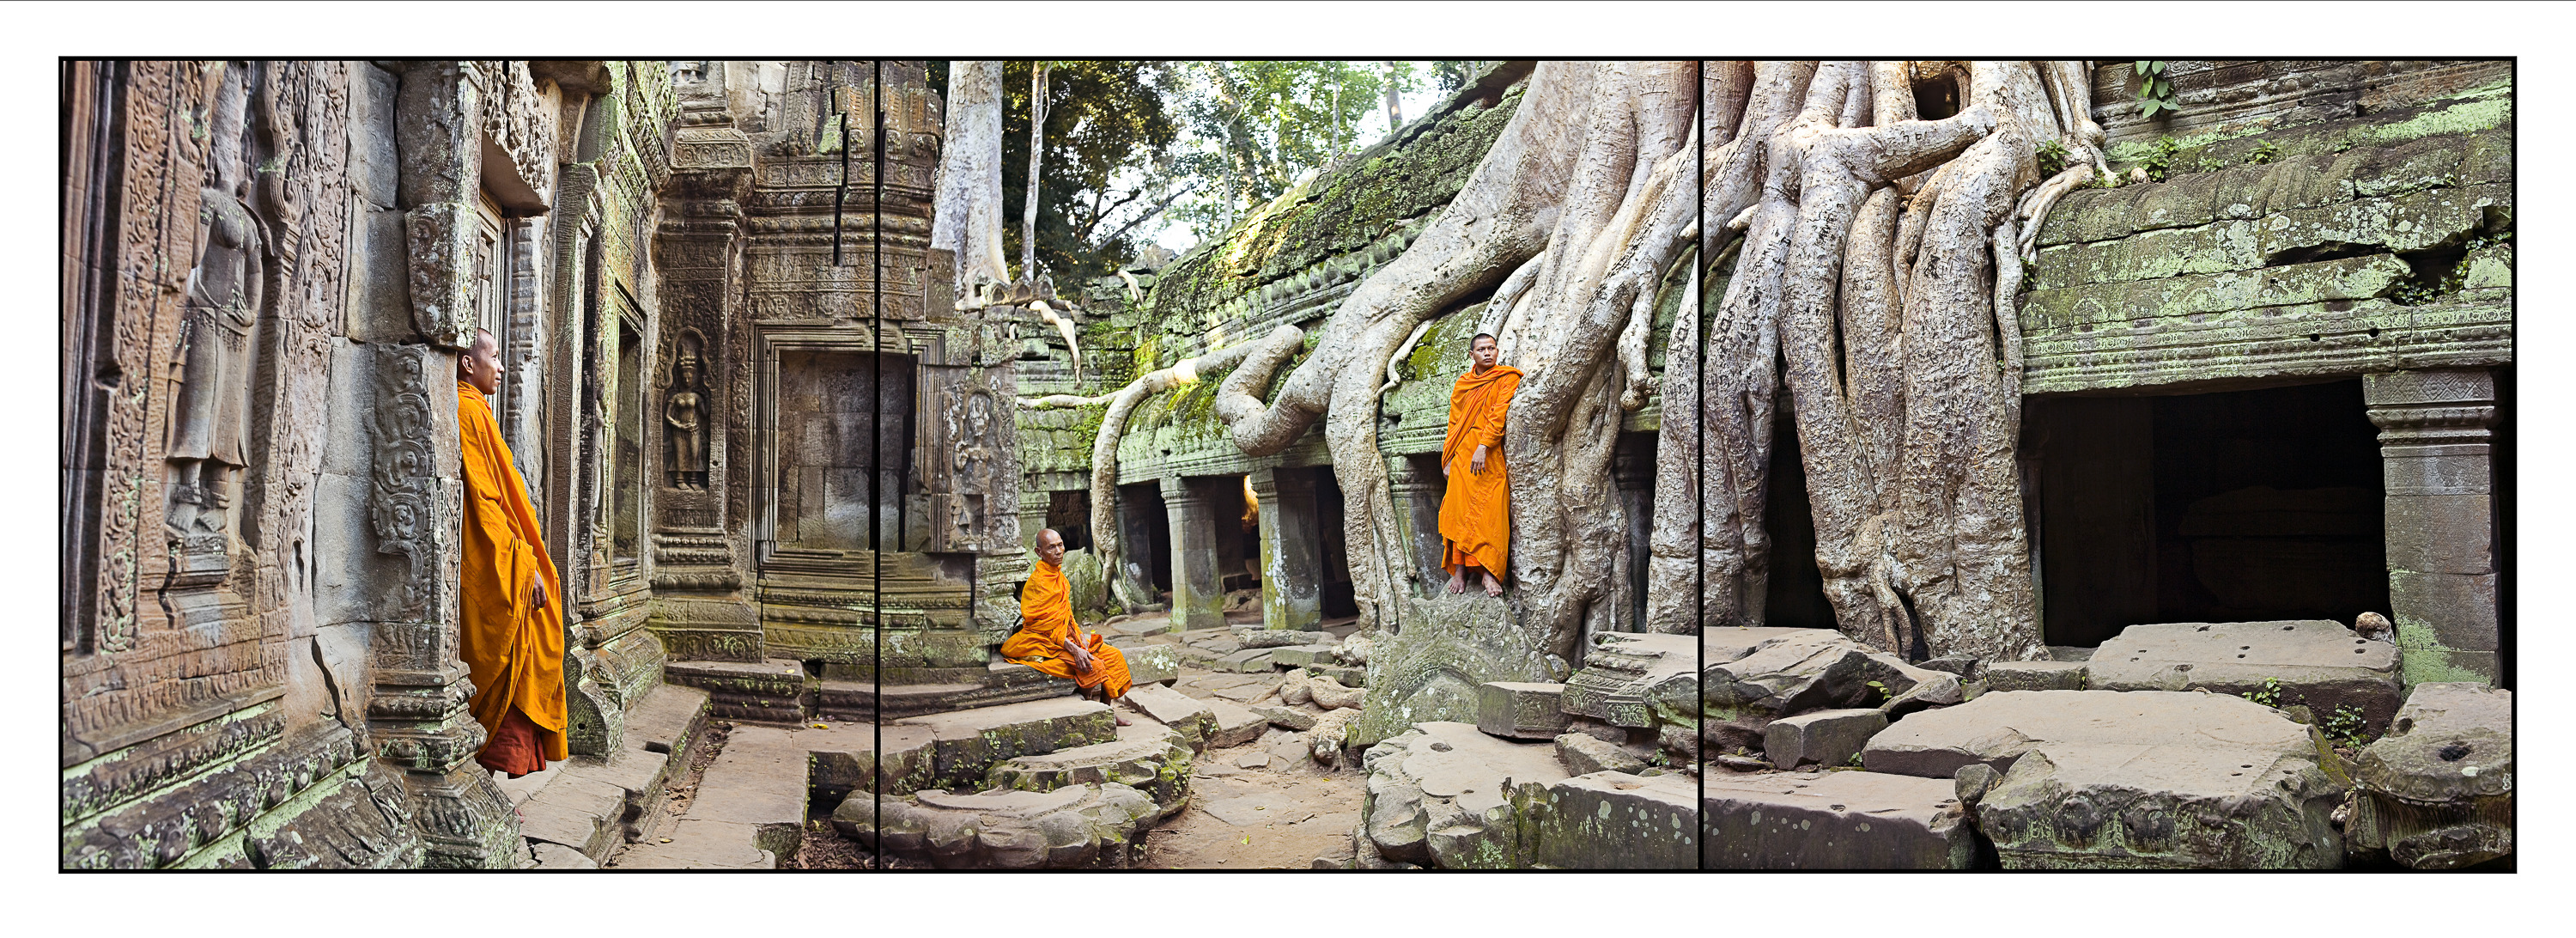 3 Monks, Ta Prohm Temple